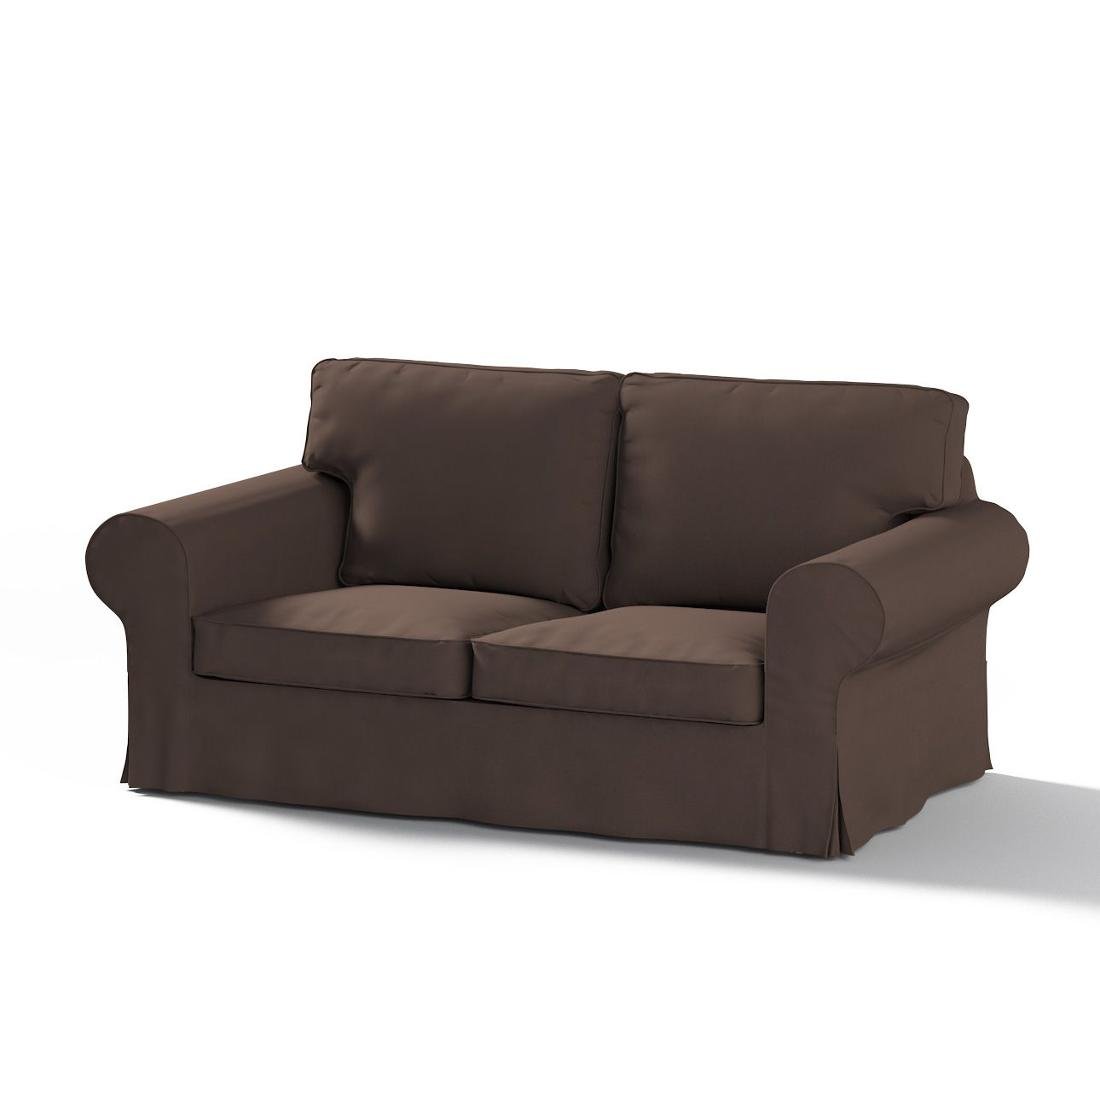 Dekoria Pokrowiec na sofę Ektorp 2-osobową rozkładaną model po 2012 Coffe czekoladowy brąz) 200 x 90 x 73 cm Cotton Panama 1016-702-03